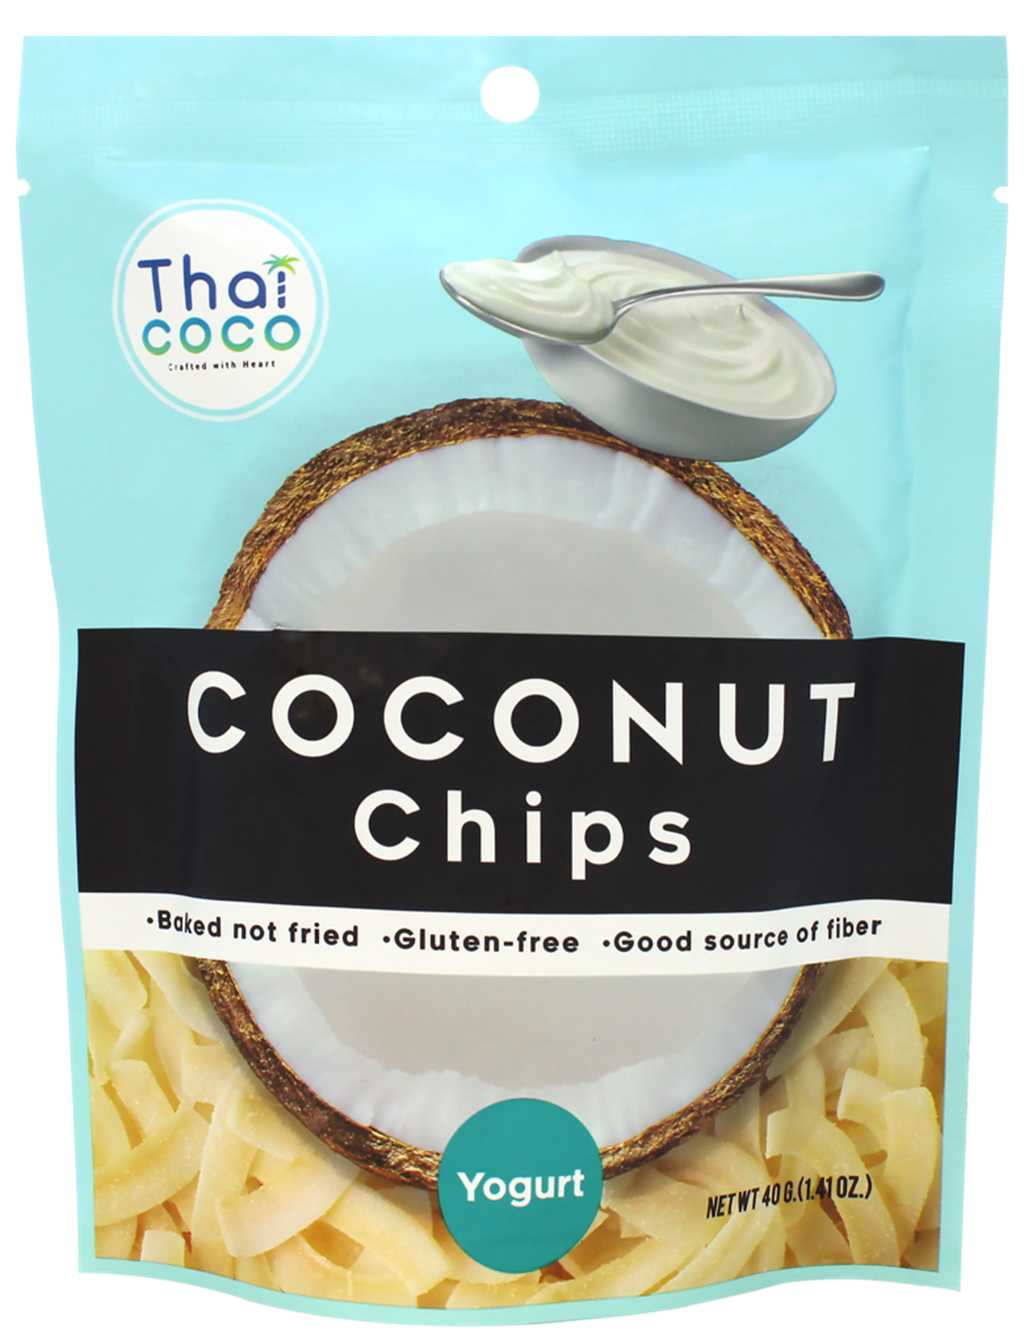 Coconut Chips YOGURT, Thai Coco (Кокосовые чипсы со вкусом ЙОГУРТА, Таи Коко), 40 г. - СРОК ГОДНОСТИ ДО 20 ДЕКАБРЯ 2023 ГОДА